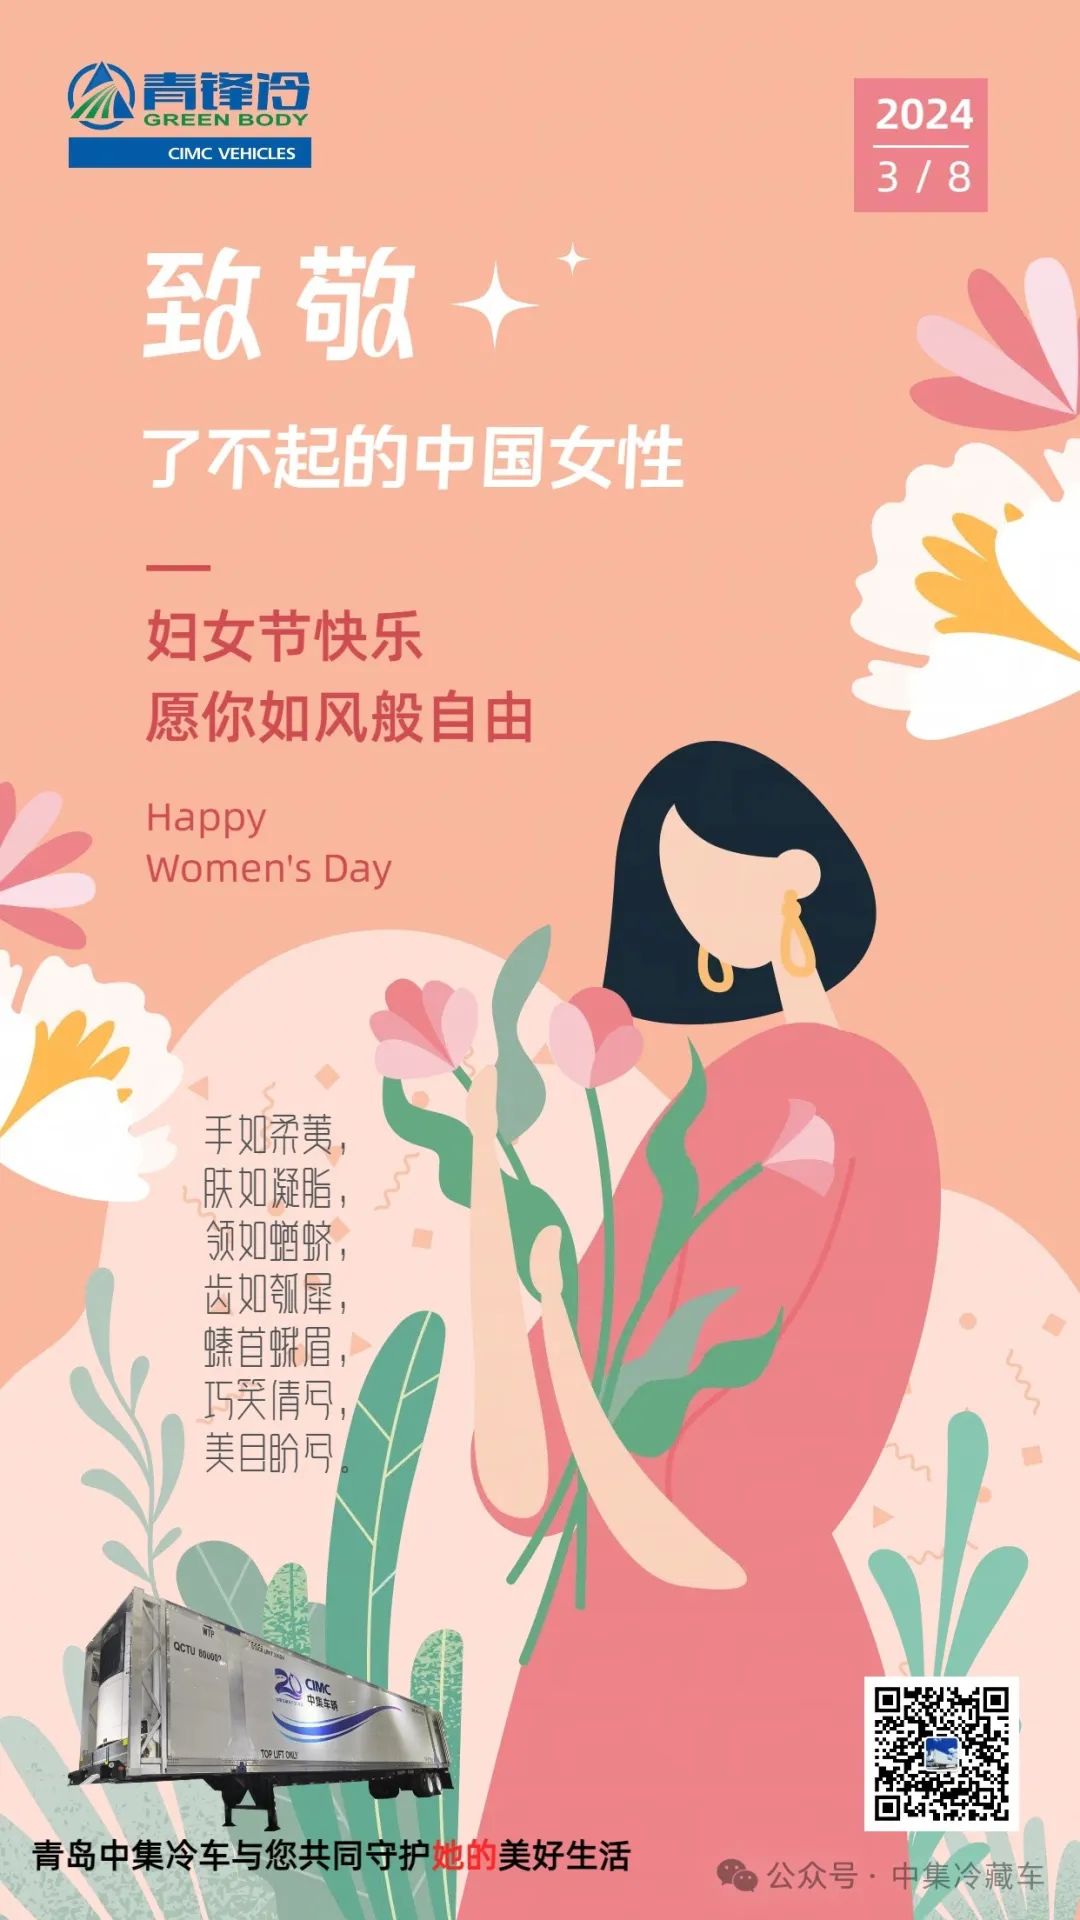 妇女节 | 致敬了不起的中国女性